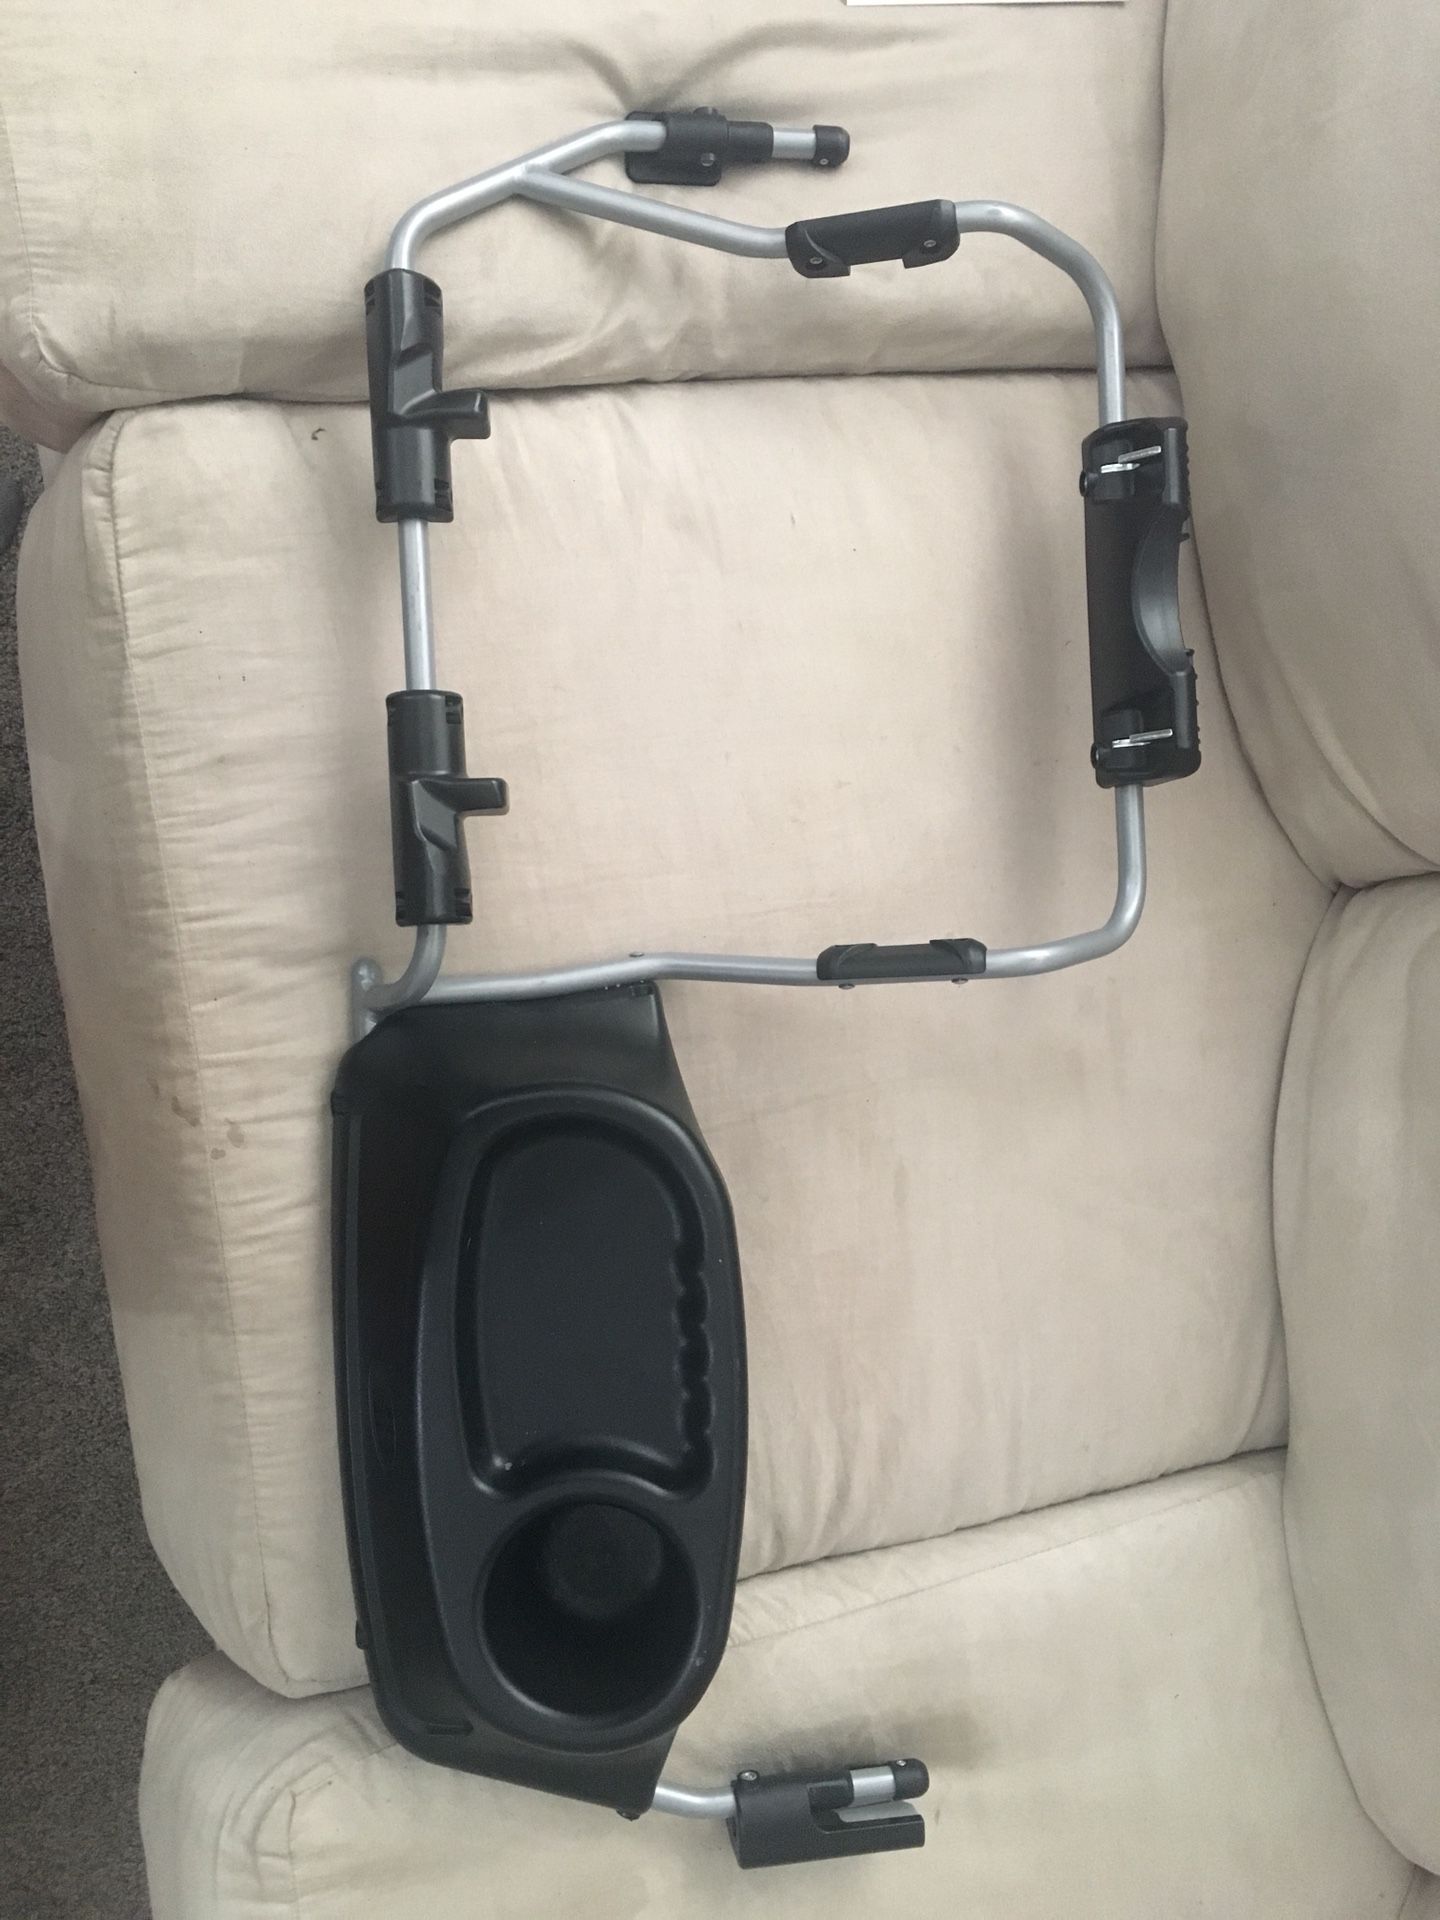 Graco attachment for bob double stroller